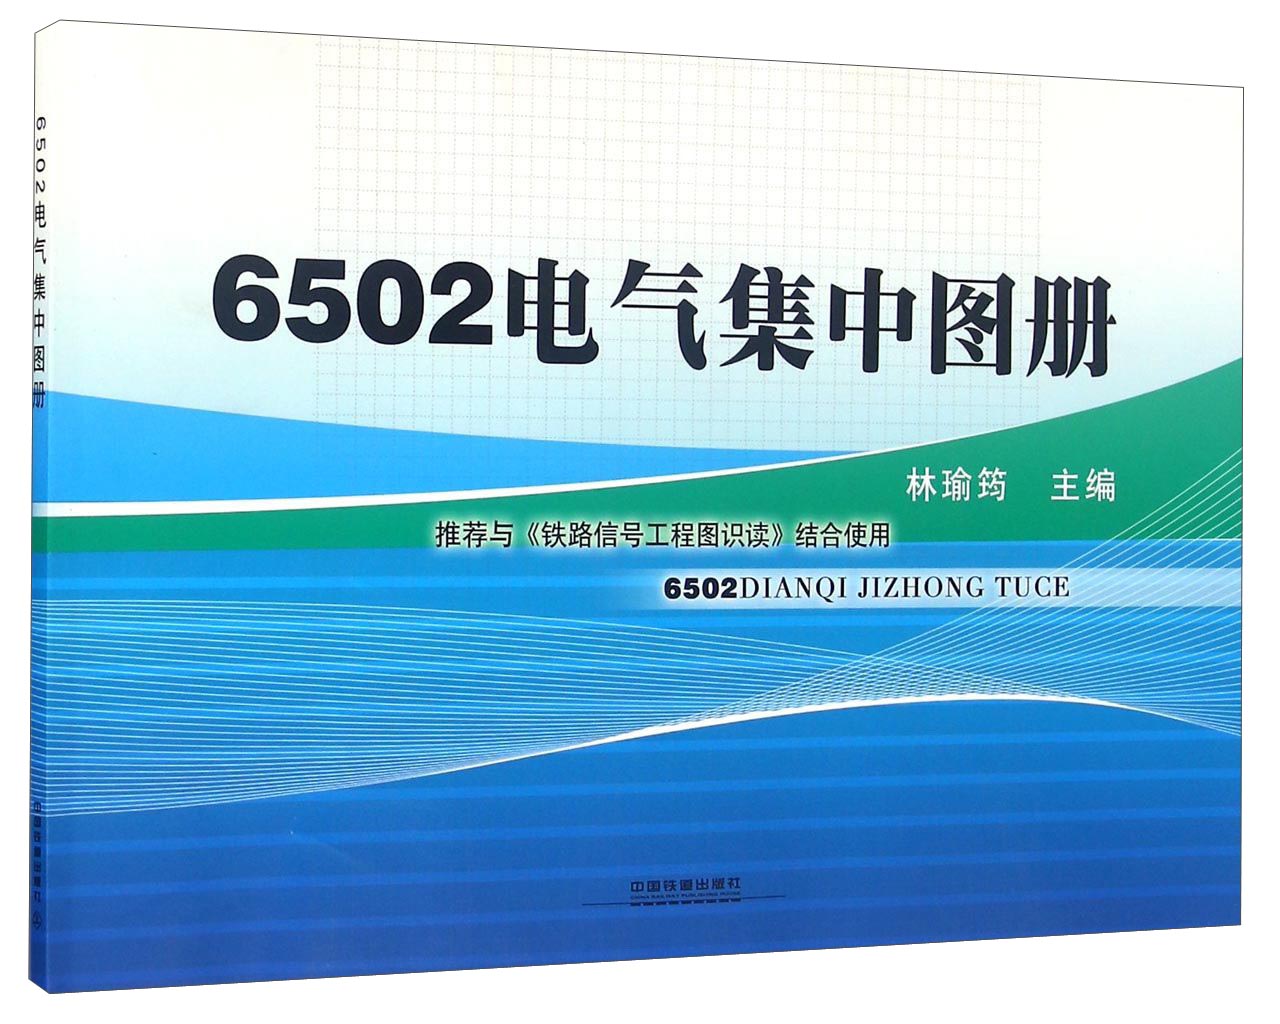 6502电气集中图册 epub格式下载